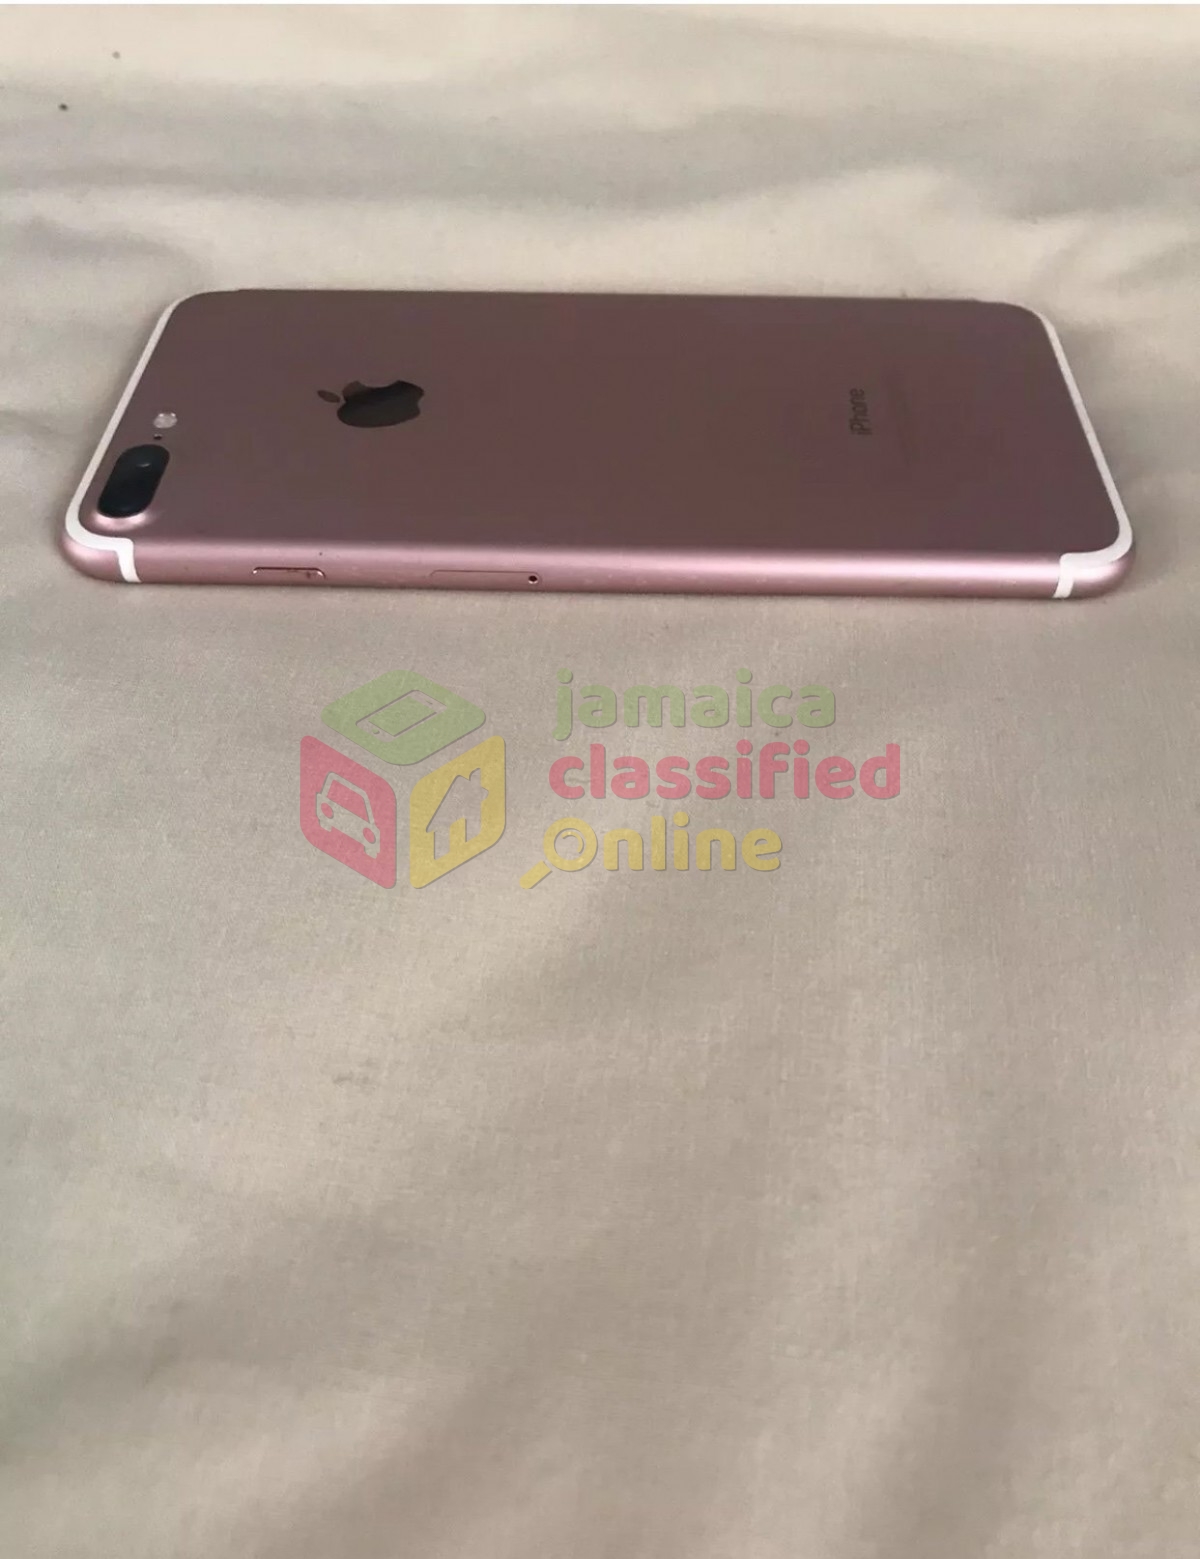 セールOFF iPhone 7 Plus Rose Gold 256 GB Softbank - スマートフォン